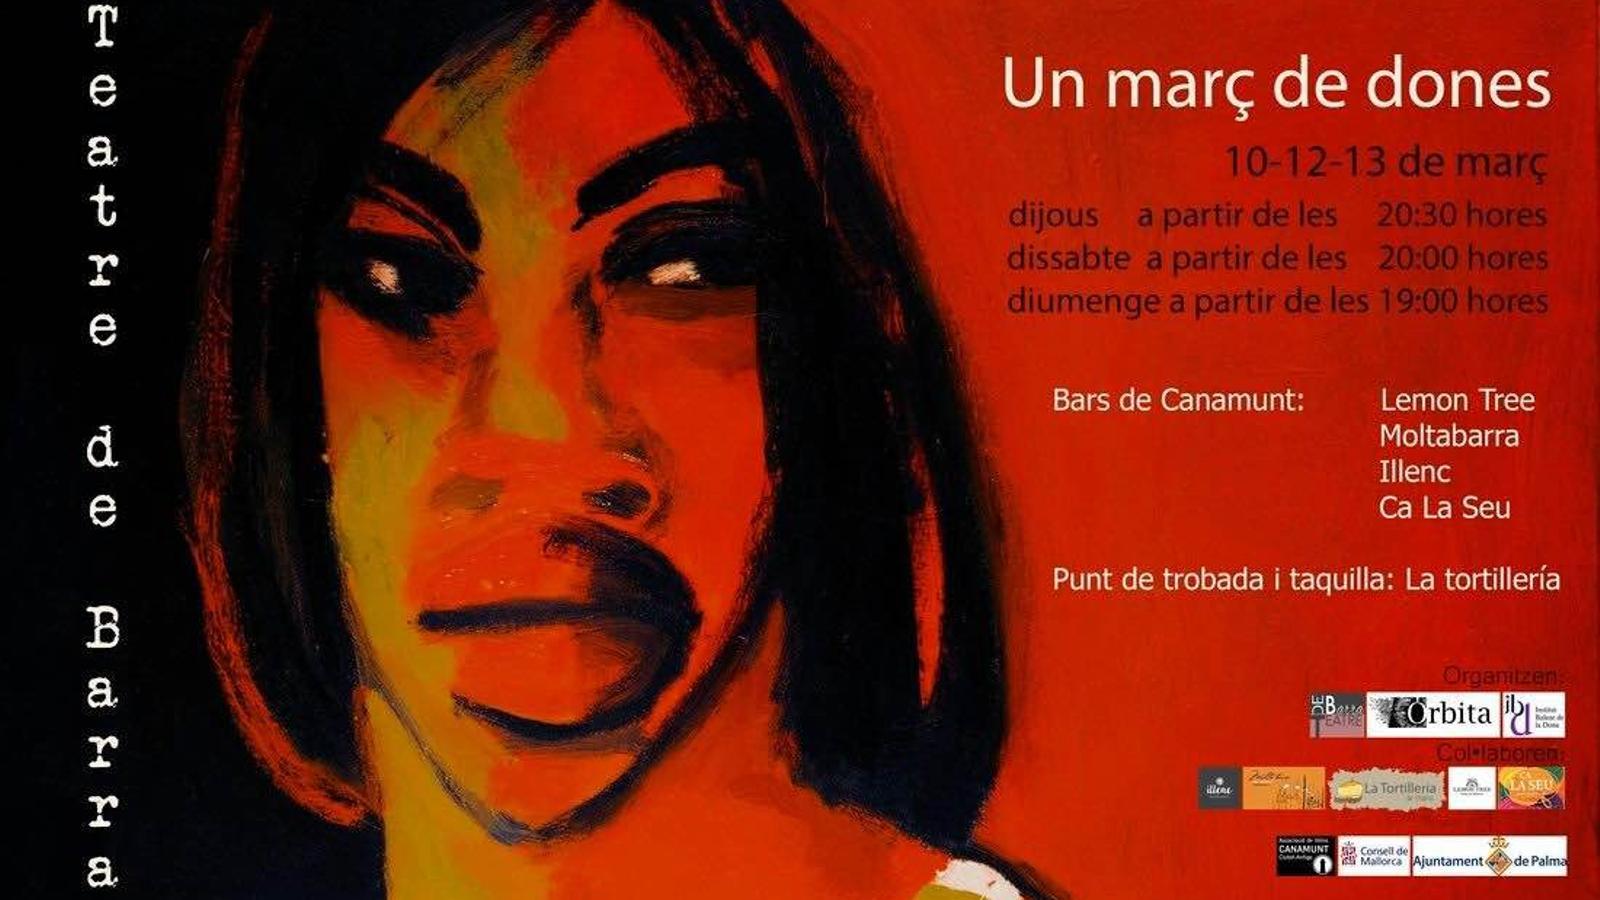 &#39;Març de dones&#39; ja té autores - cartell-Marc-dissenyat-Maria-Carbonero_1524457746_26882511_1100x674